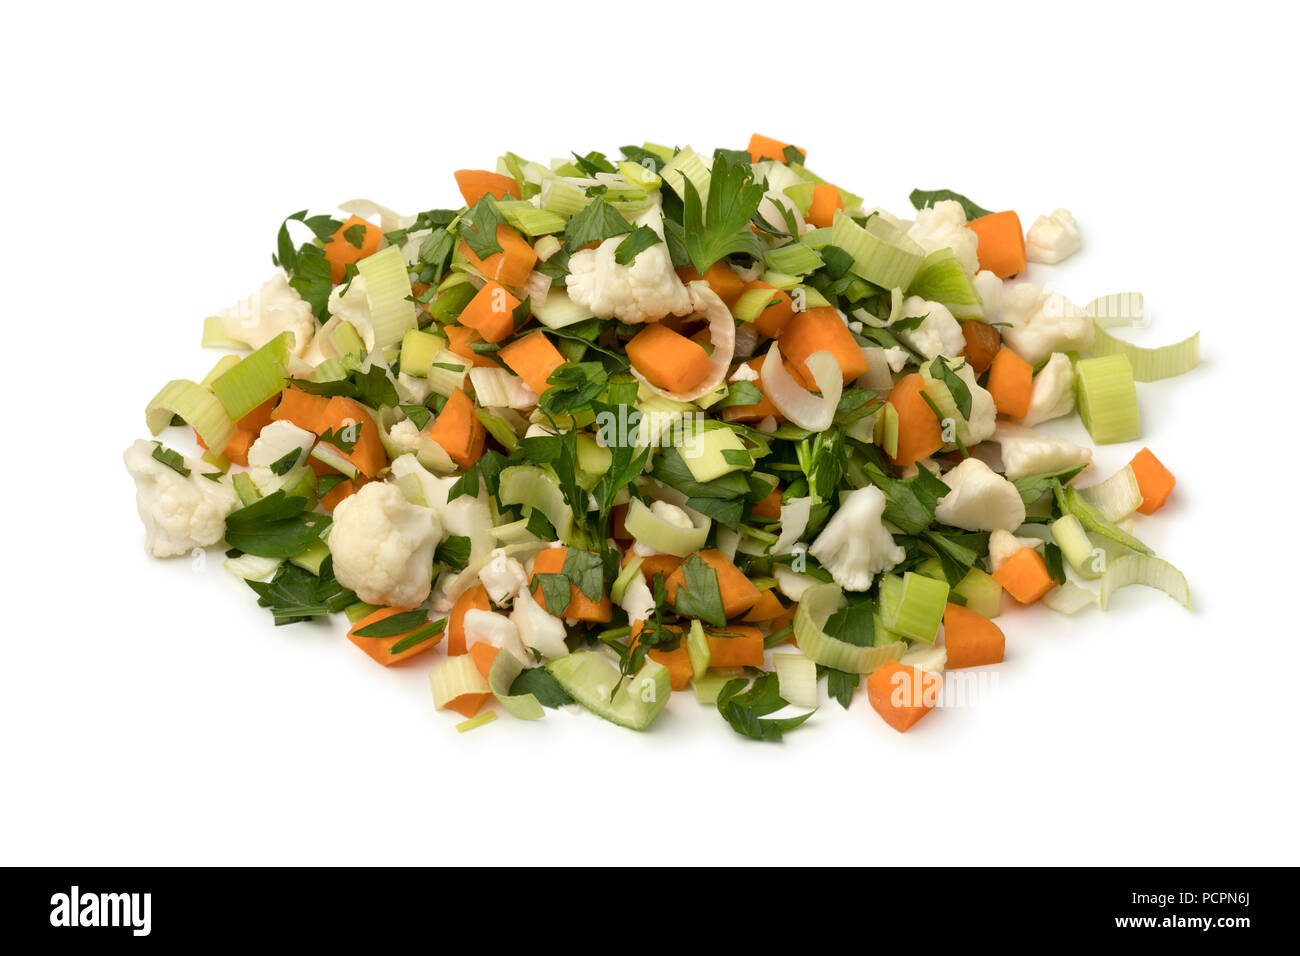 Heap frisches Bio-Gemüse, in Niederländischen soepgroente genannt, auf weißem Hintergrund Stockfoto